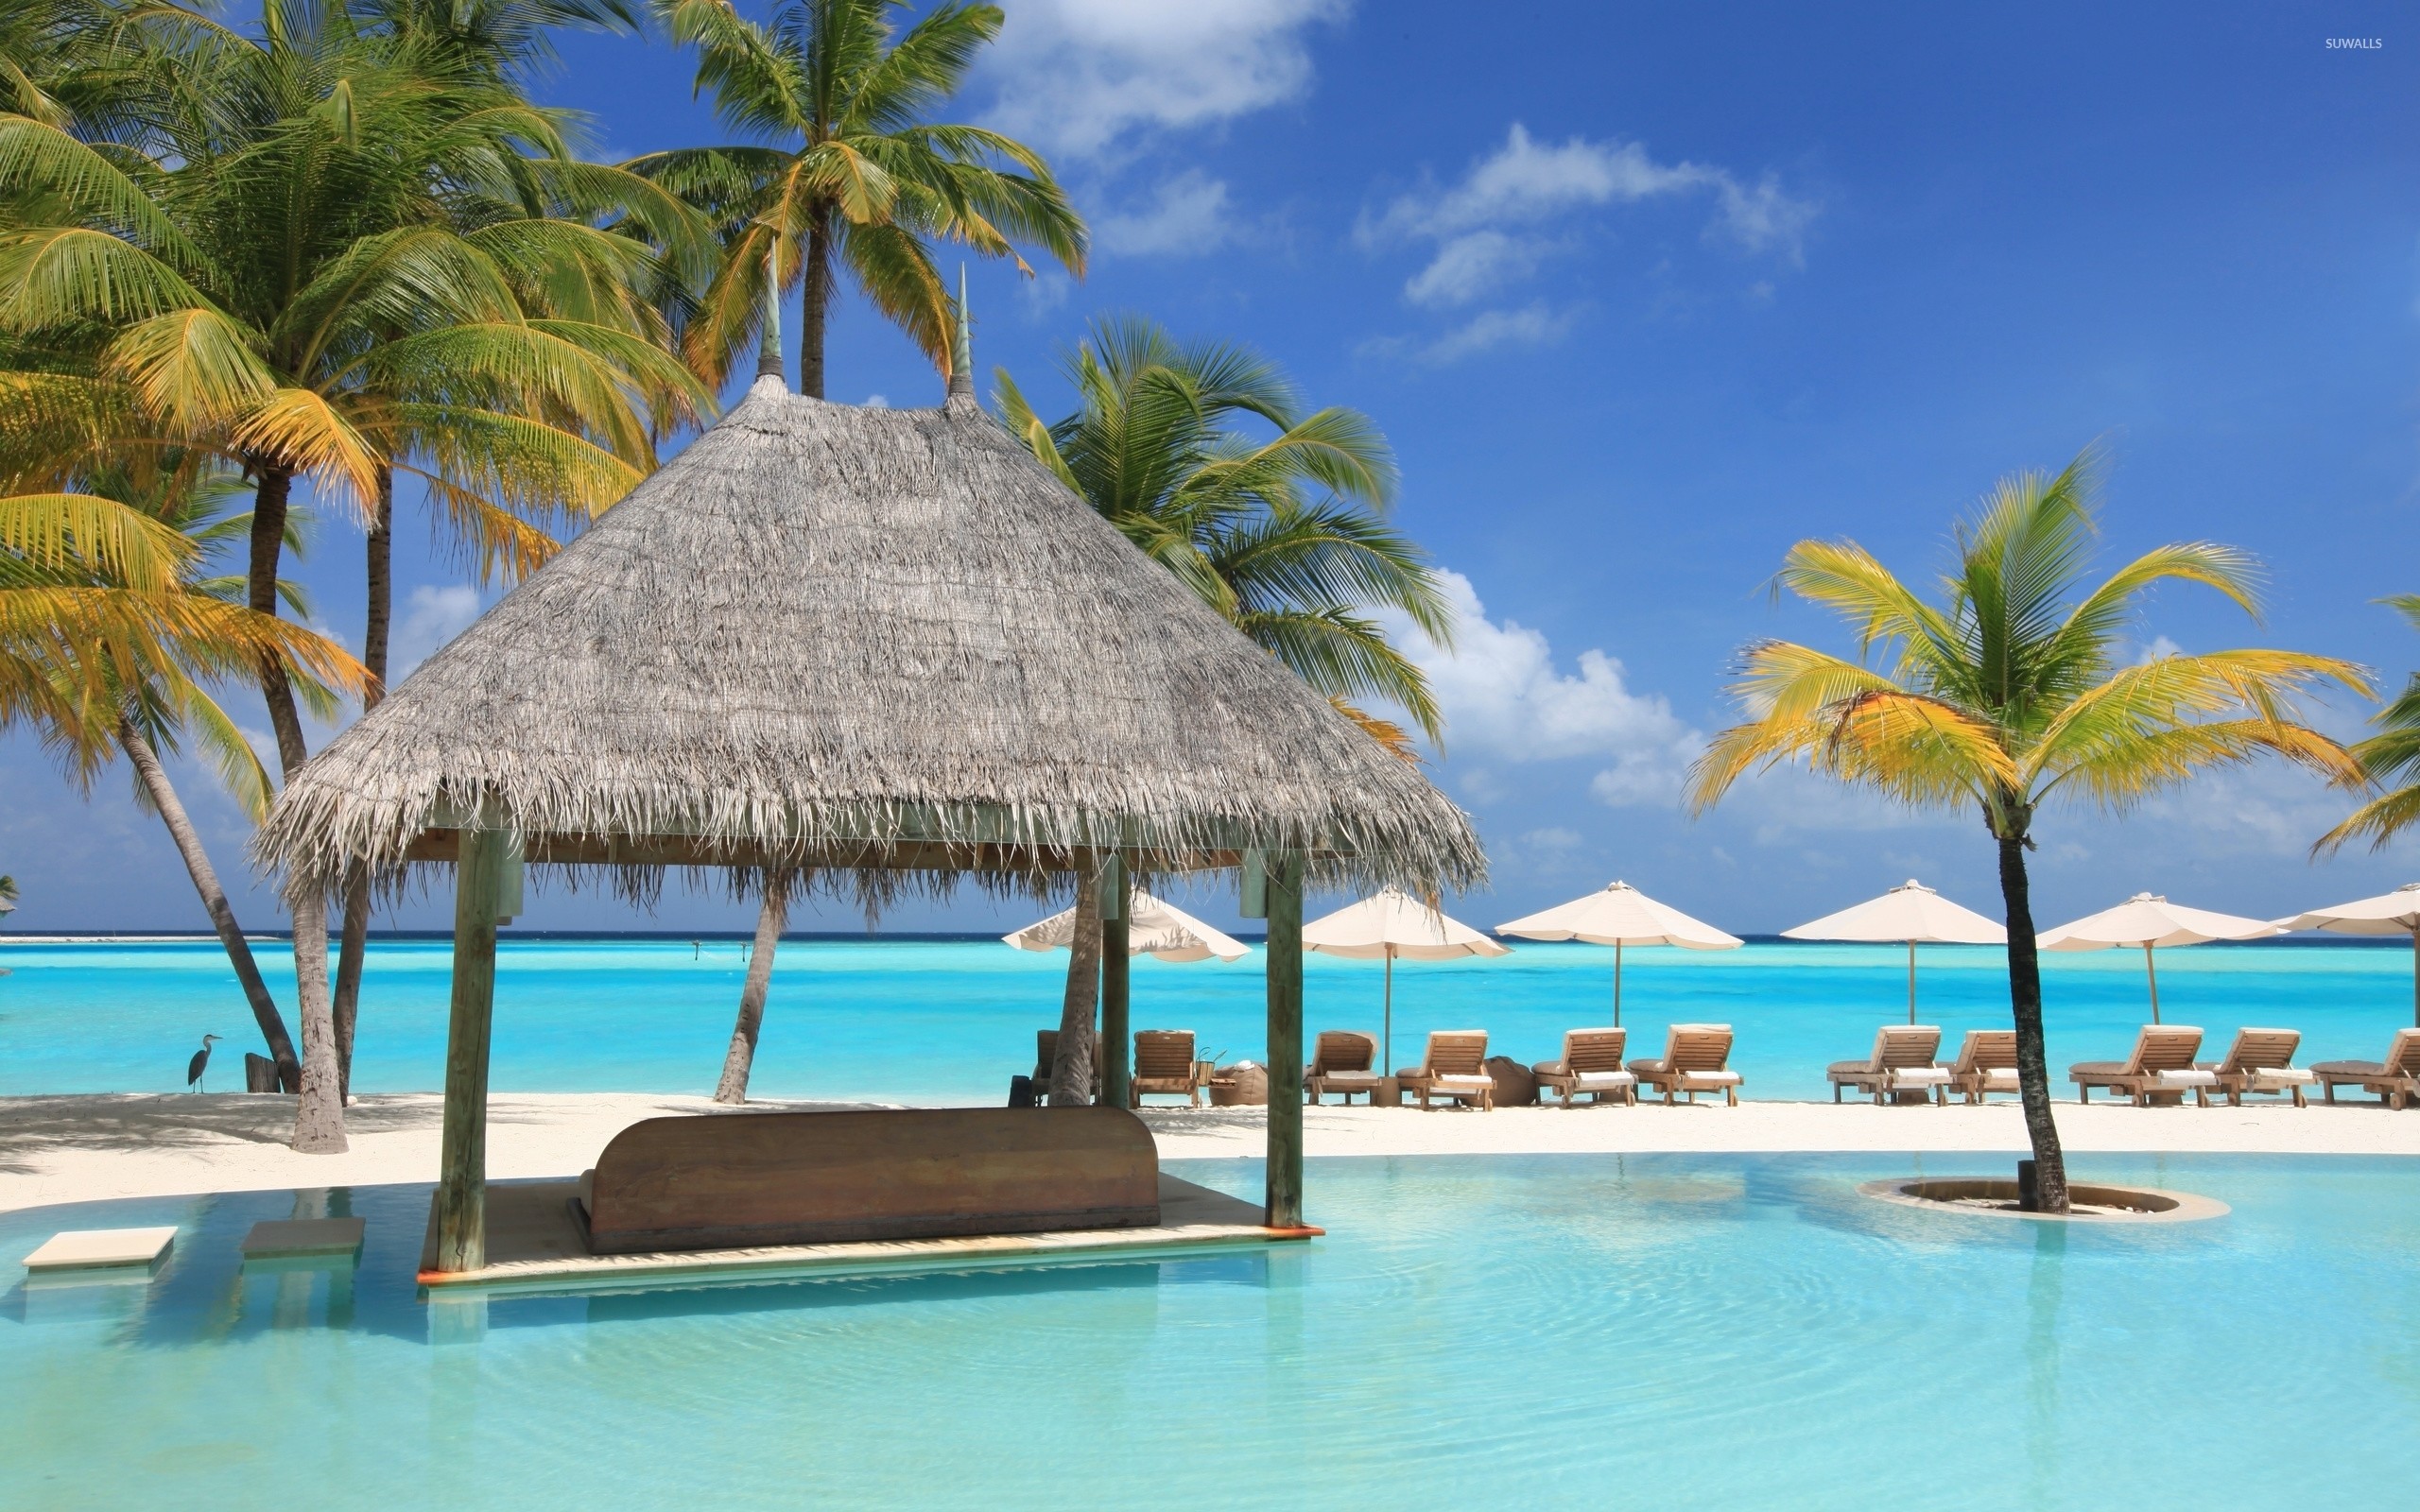 2560x1600 Beautiful resort in Maldives wallpaper